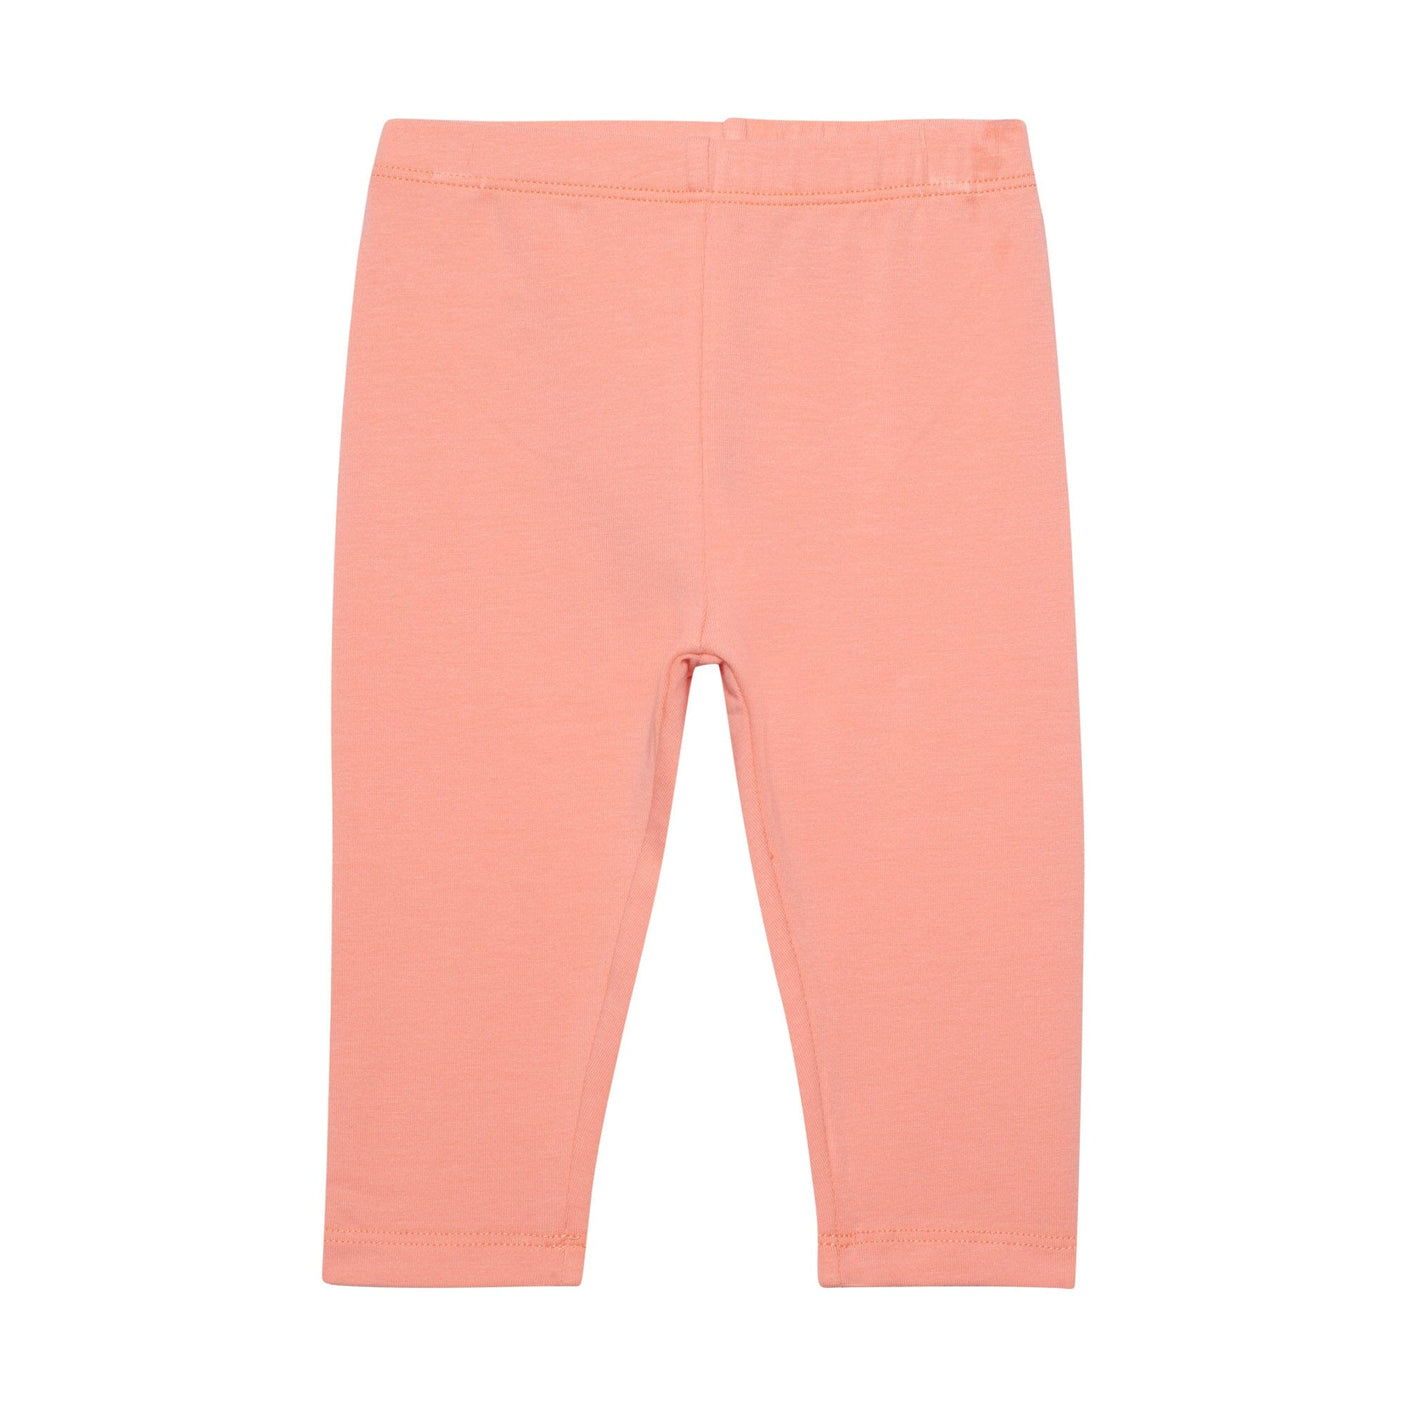 Organic Cotton Printed Tunic & Leggings Set Pink Snails-2